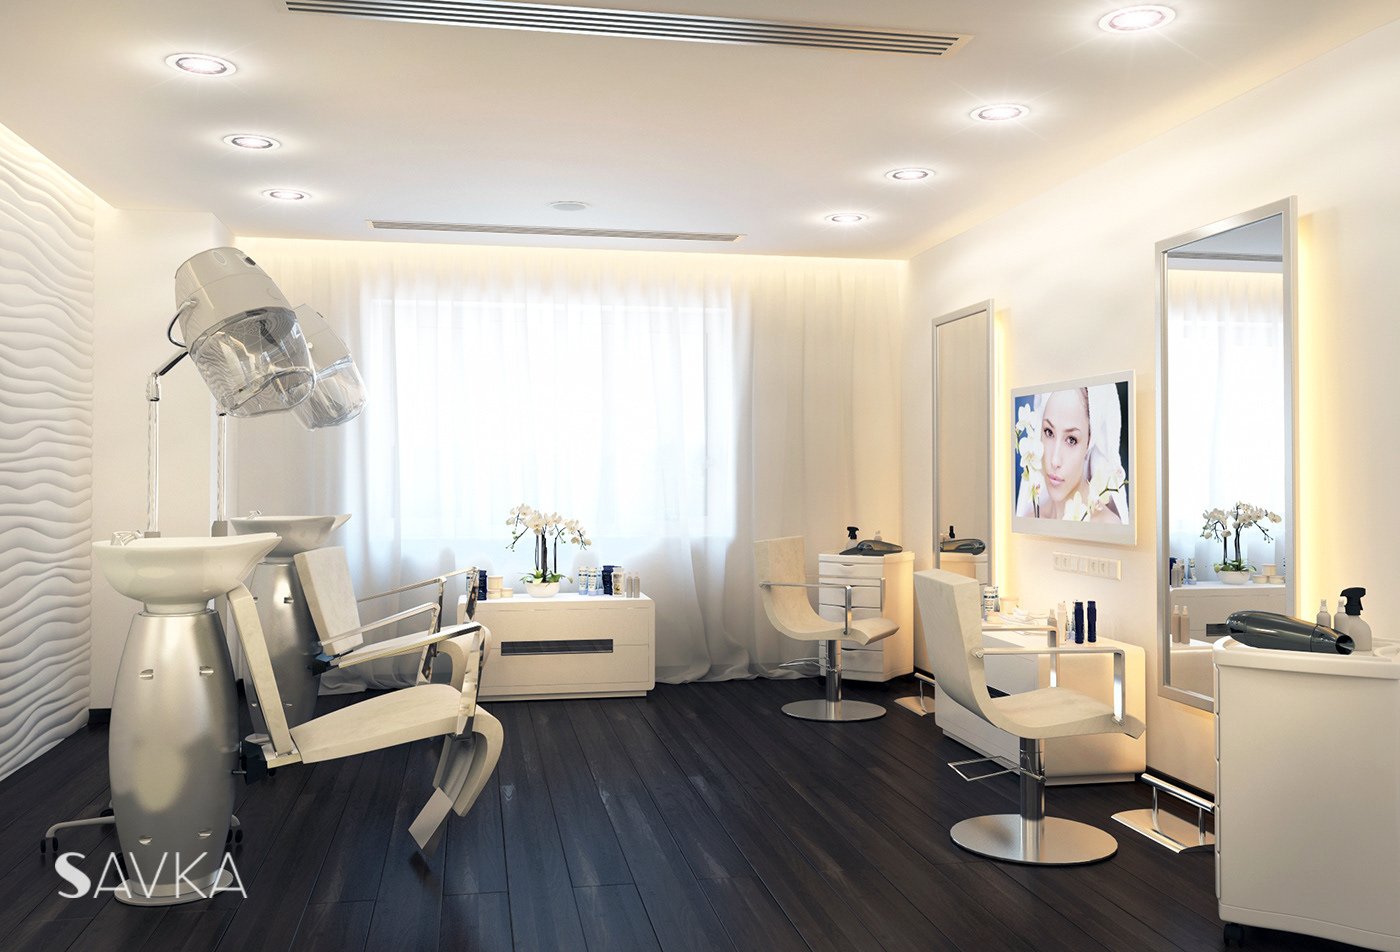 Interior design of beauty salon on Behance